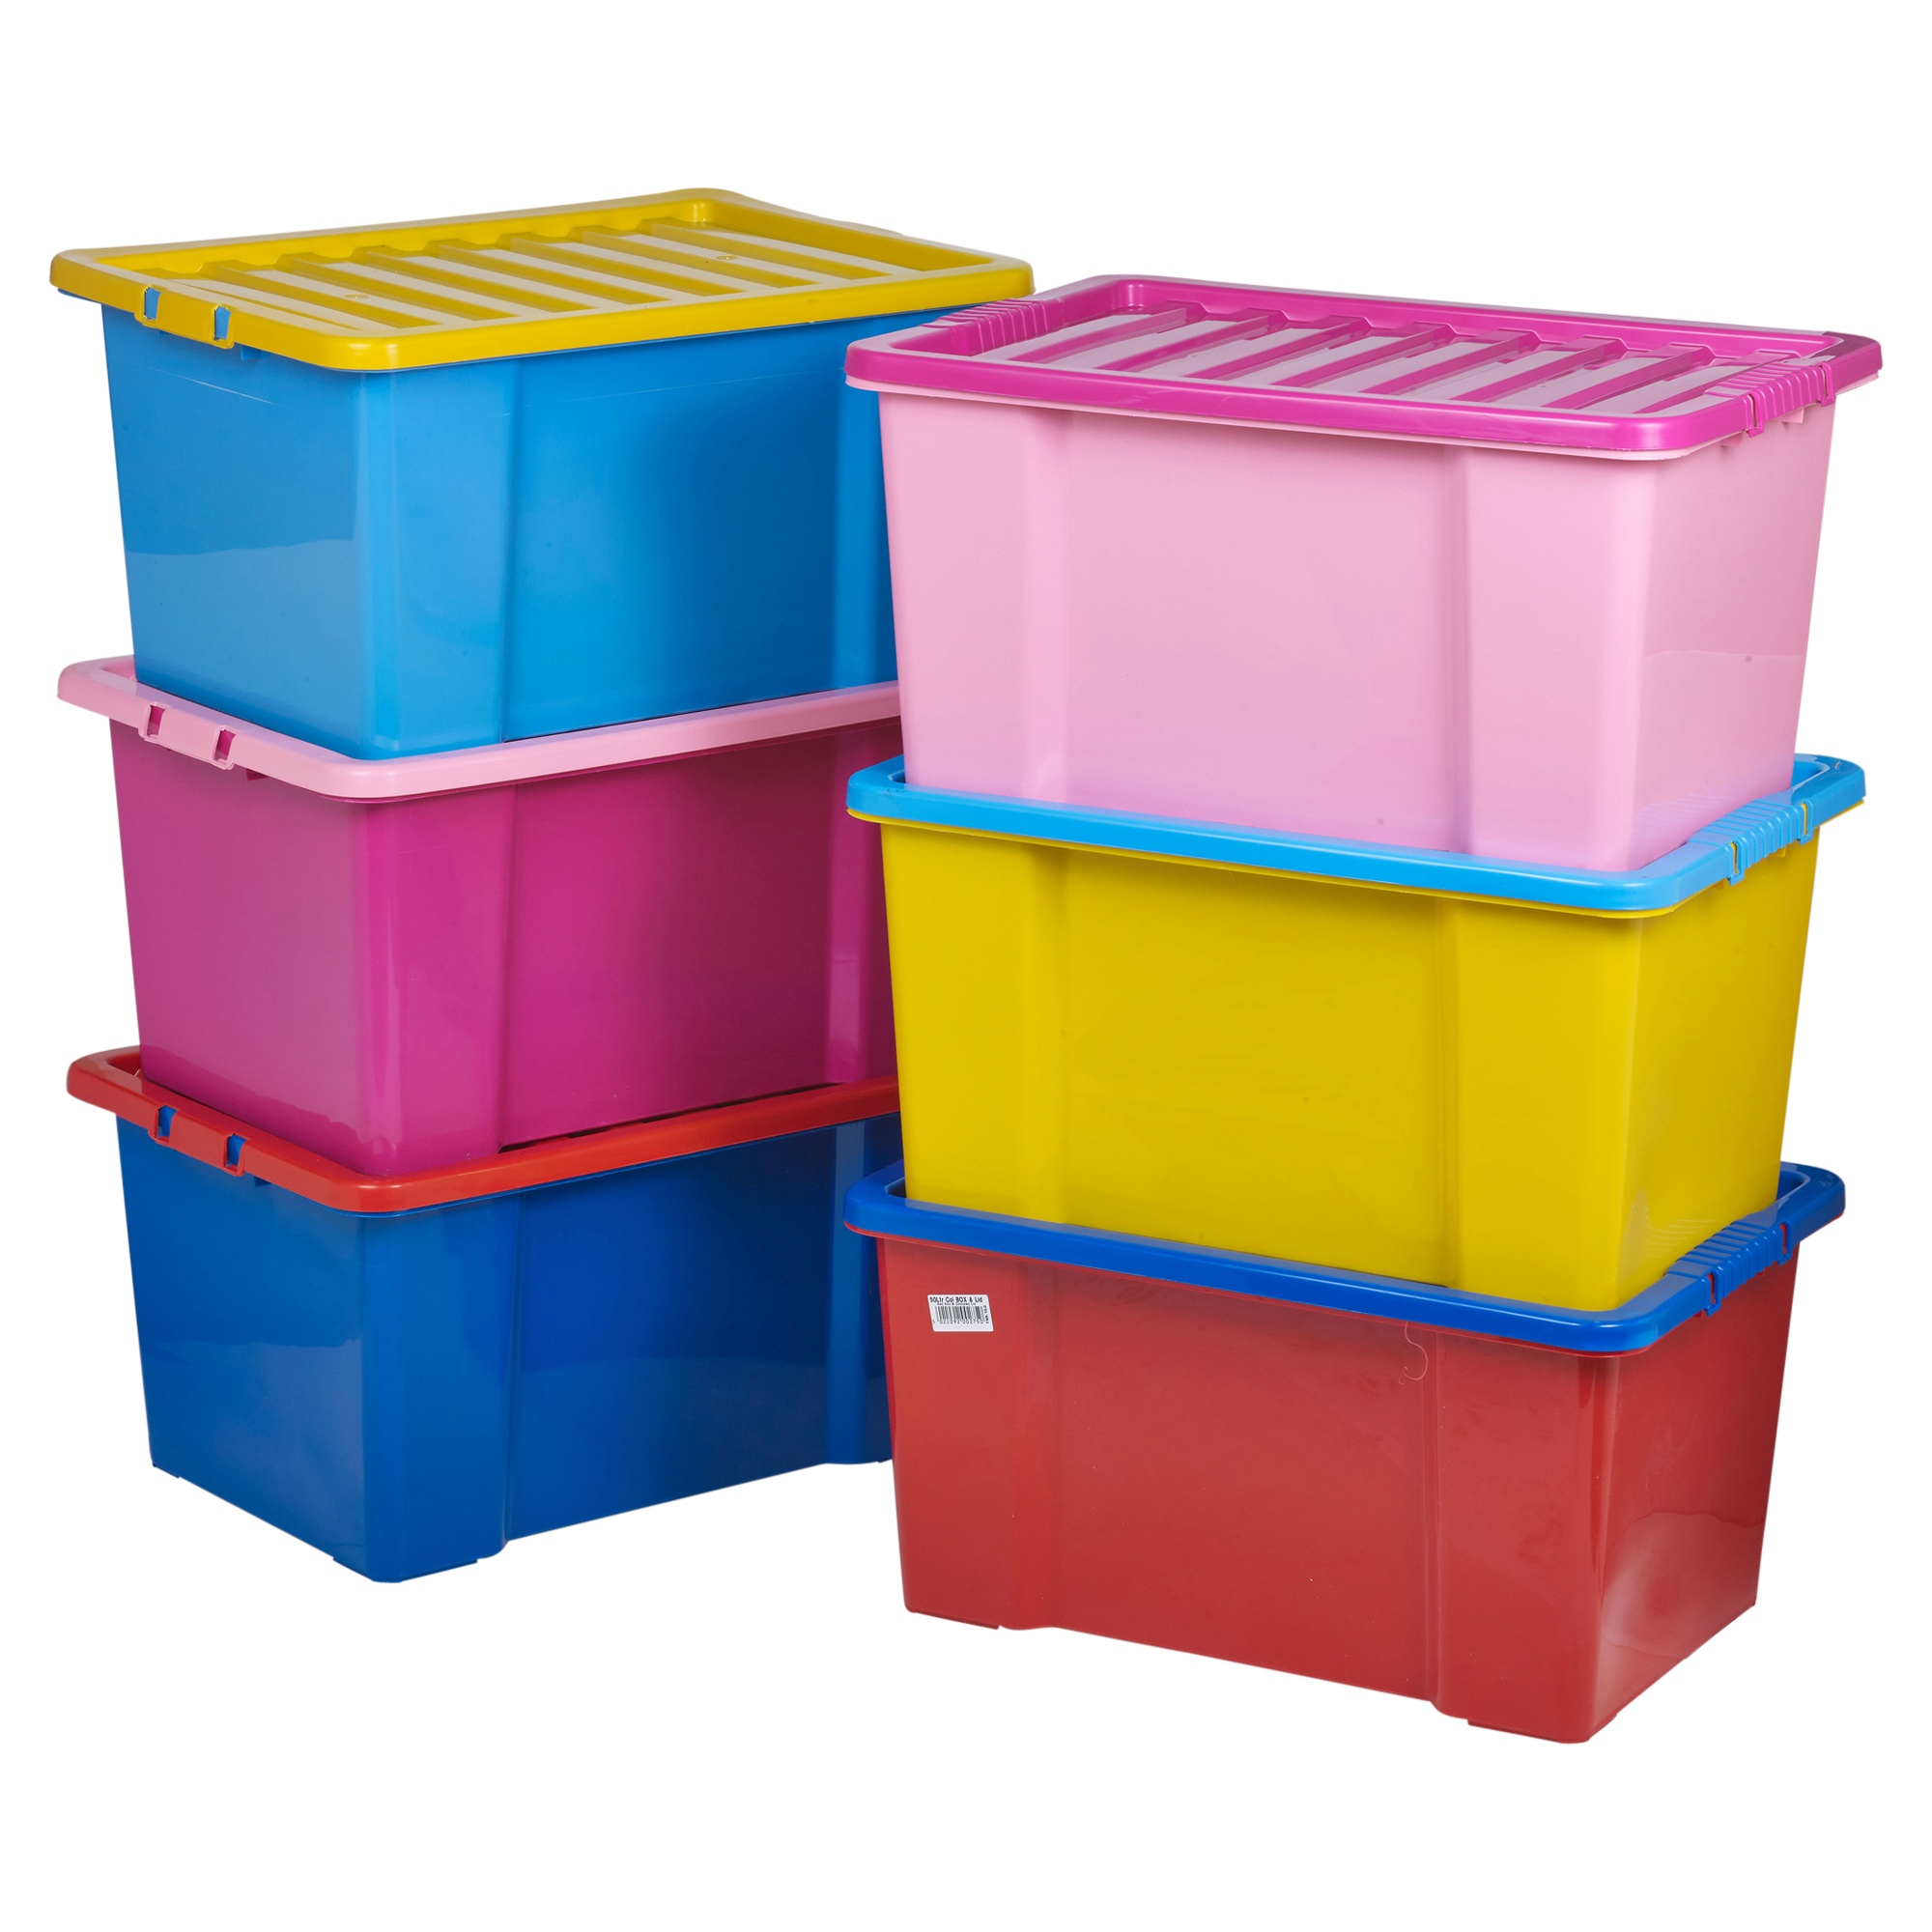 50 Litre Coloured Plastic Storage Boxes Set Clip Lid Quality Stackable